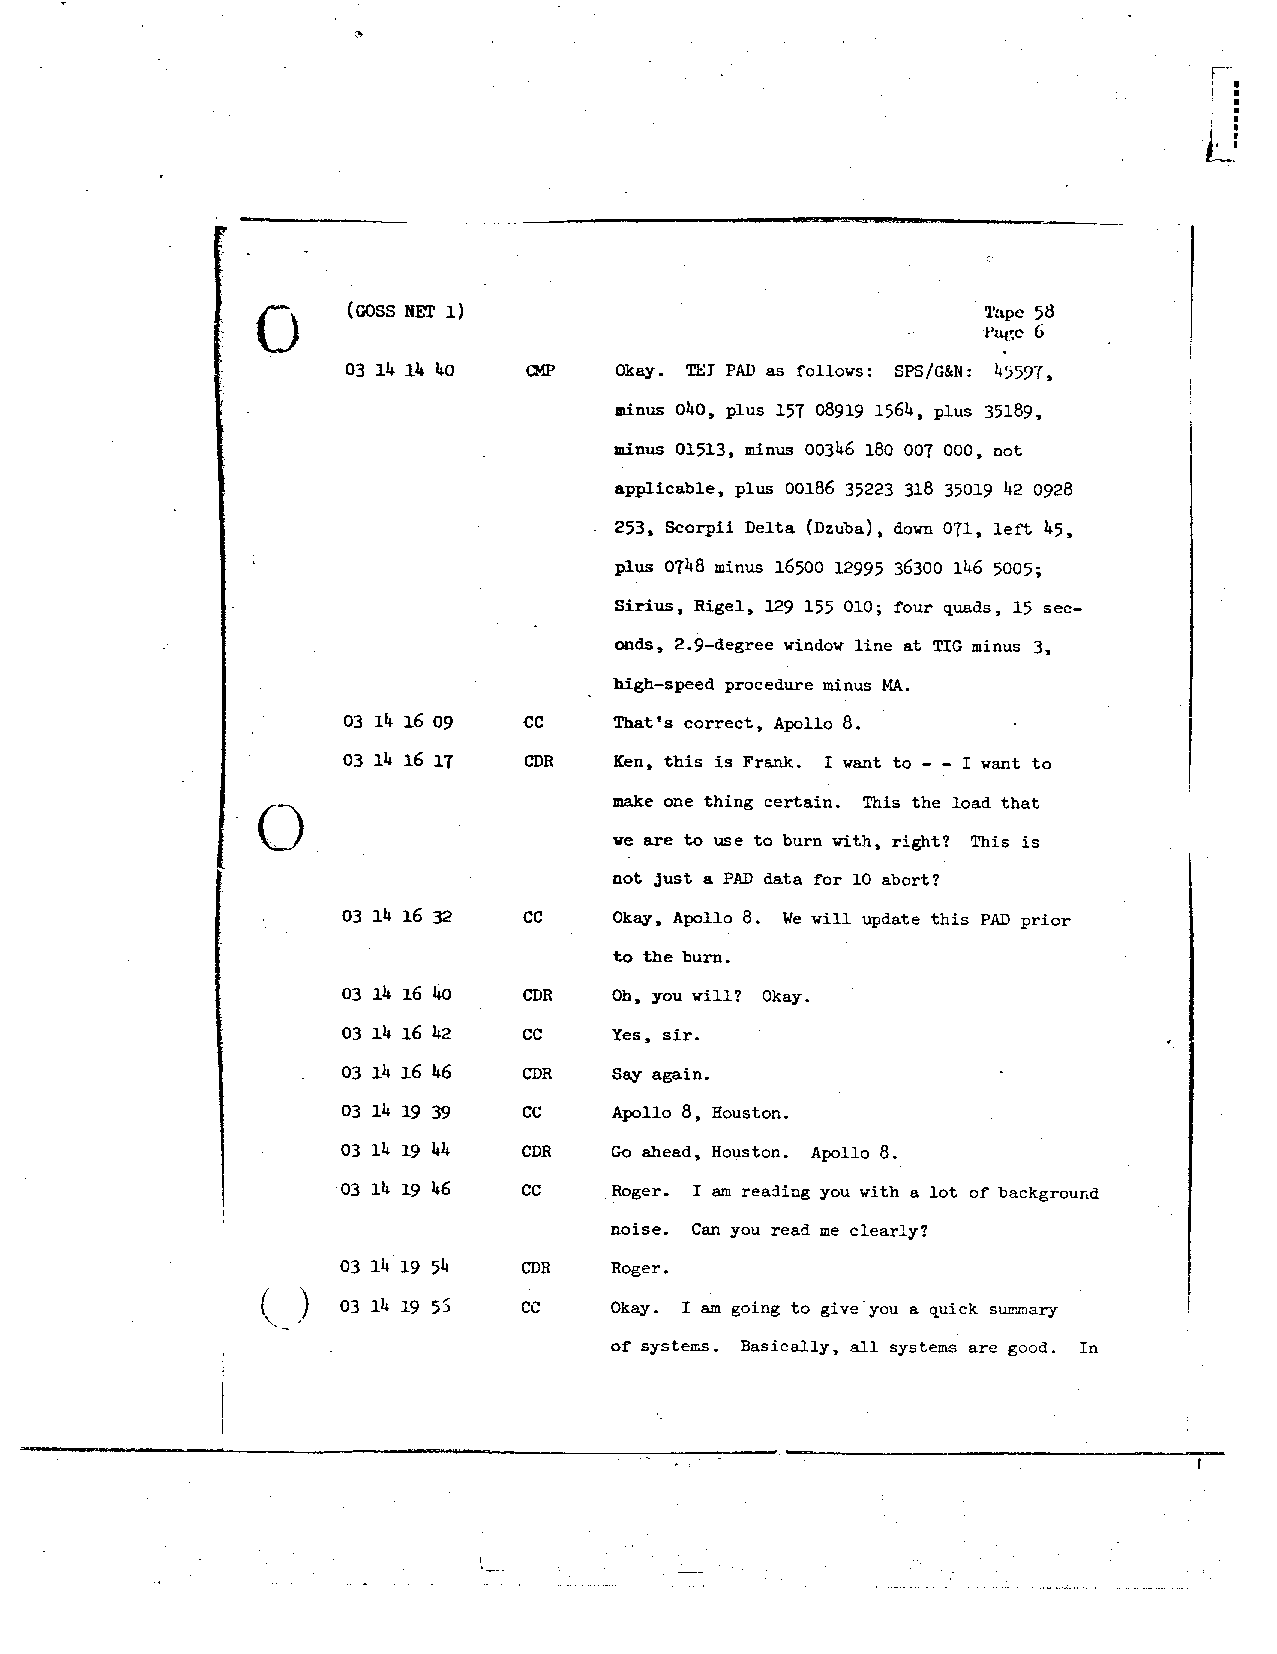 Page 465 of Apollo 8’s original transcript